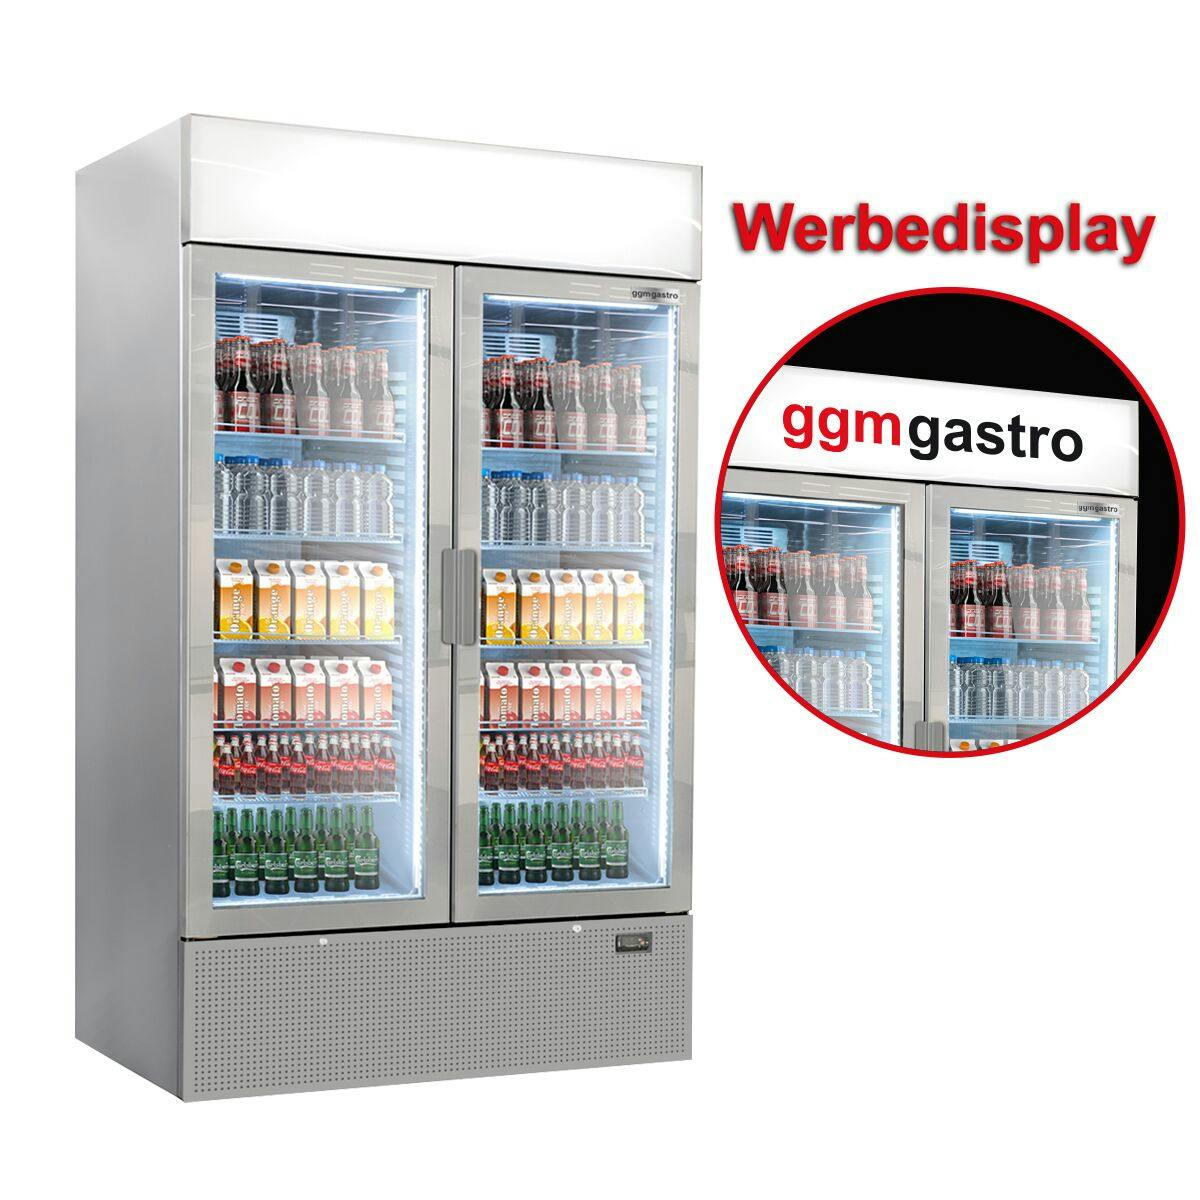 (5 pieces) Beverage refrigerator - 5240 litres (total) - grey